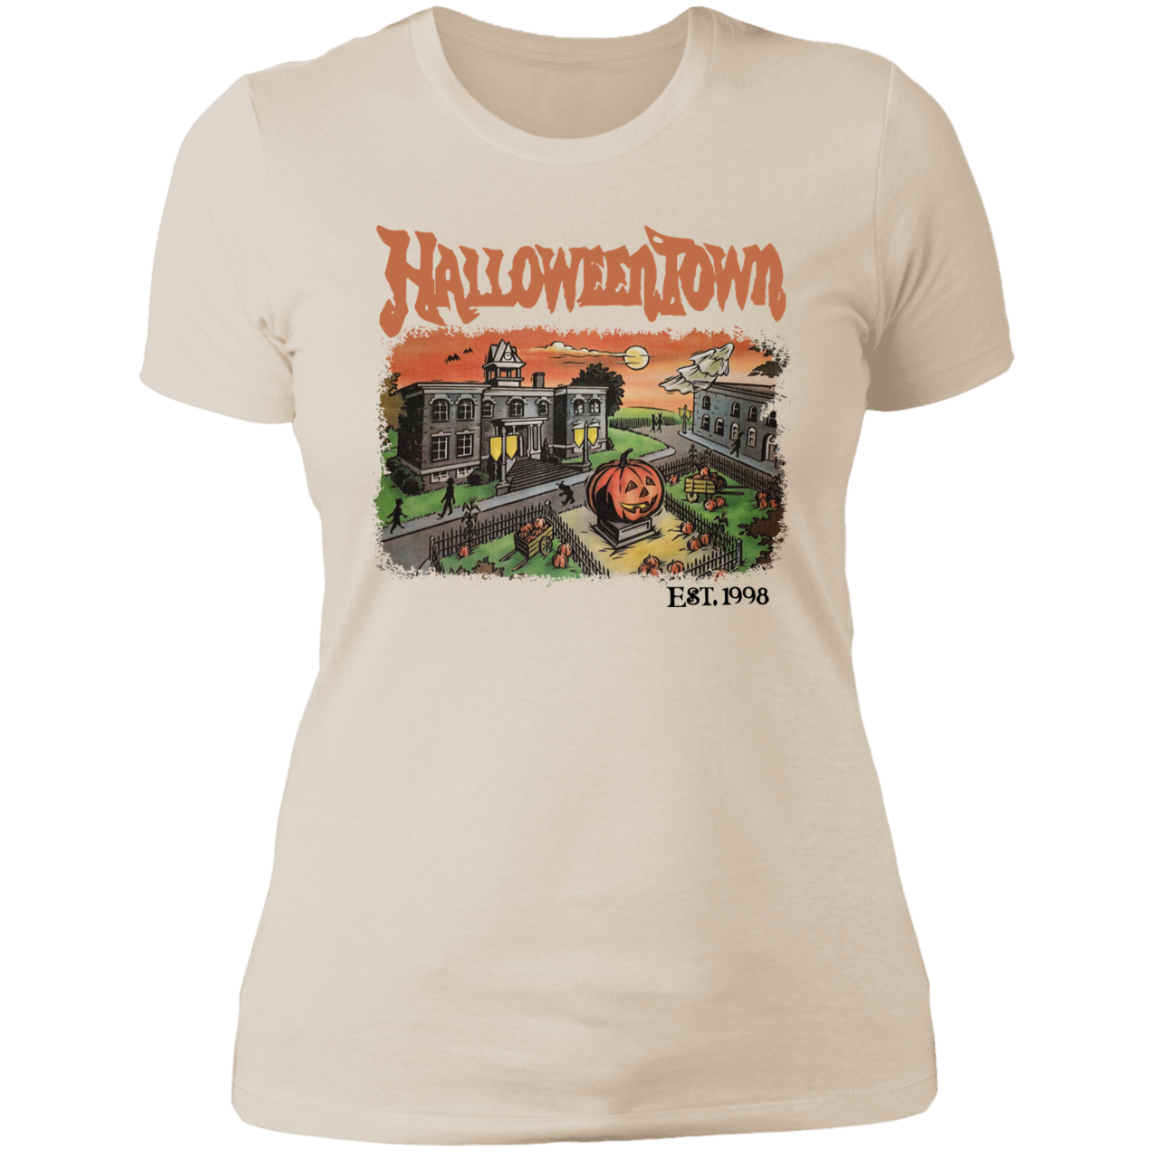 HalloweenTown- Camiseta de novio para mujer